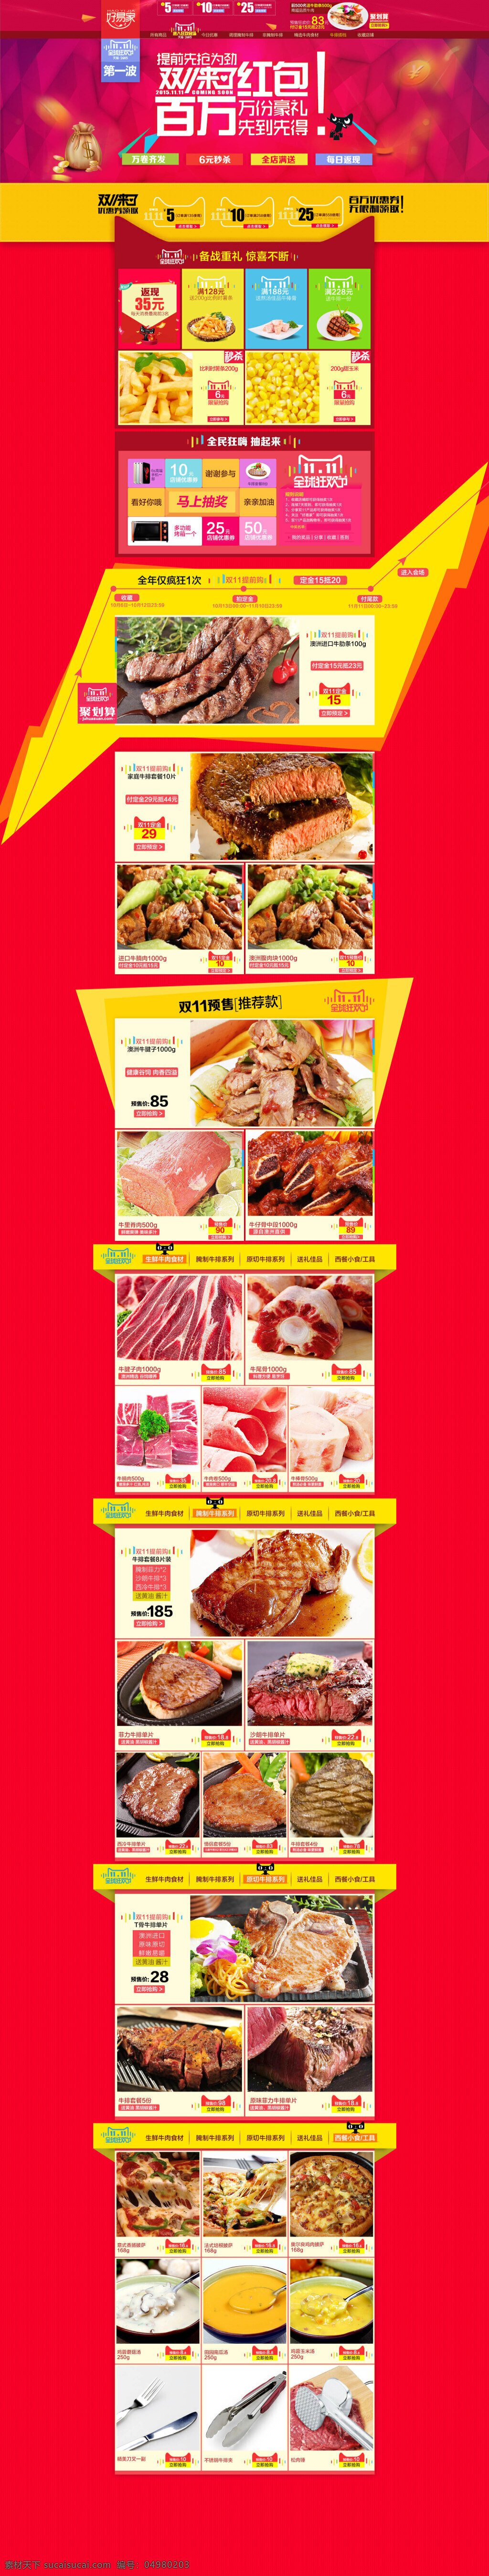 淘宝 美食 店铺 模板 双 全球 狂欢节 双十 天猫 2015 红色